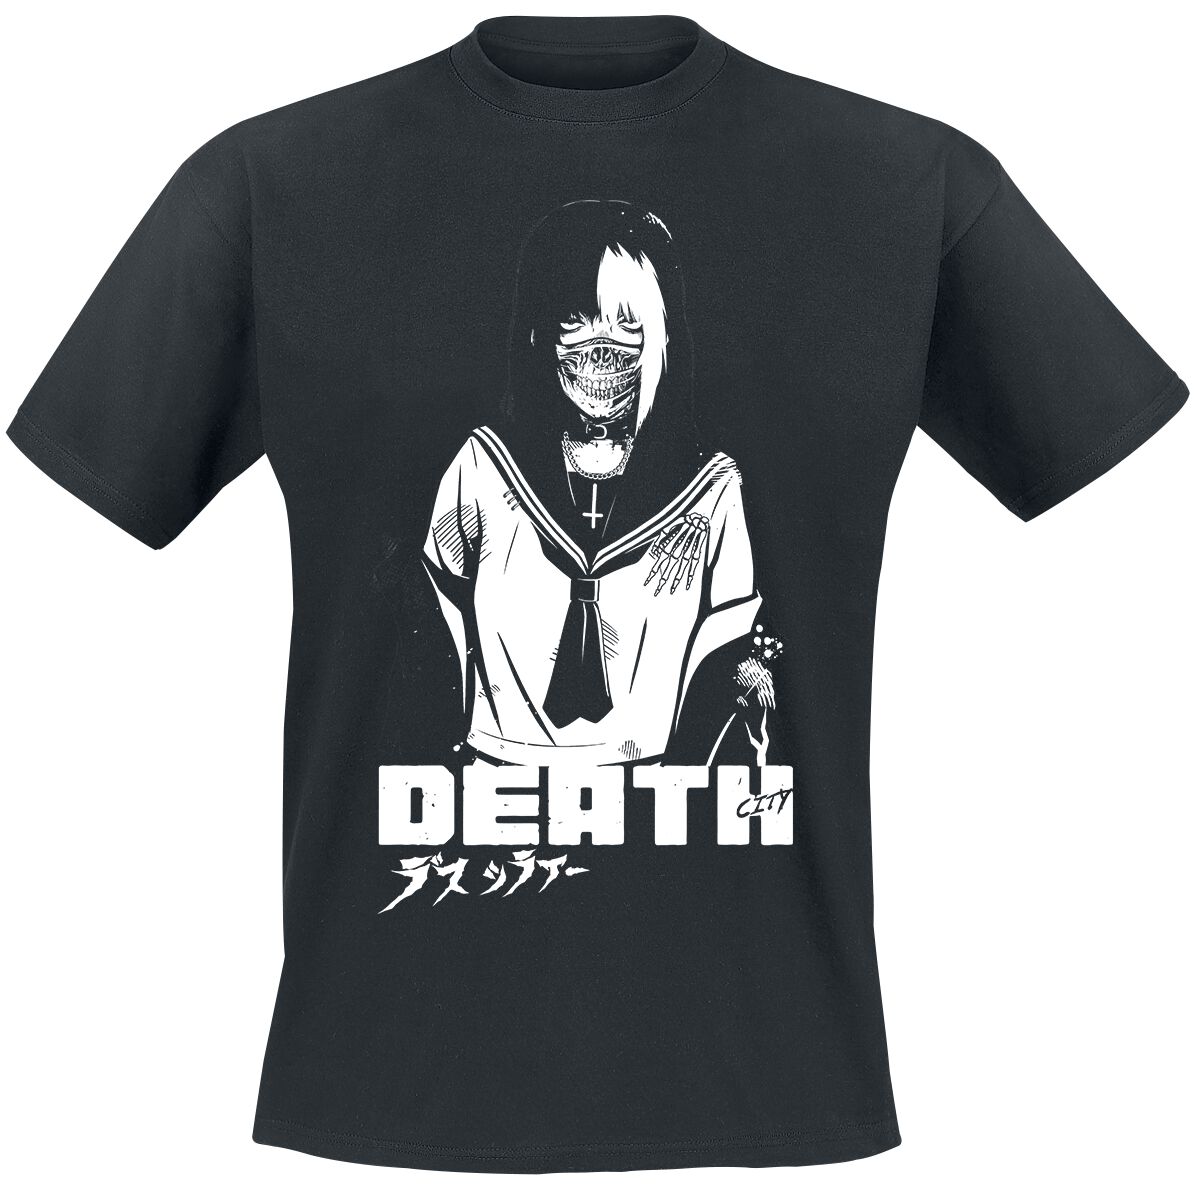 Zombie Makeout Club T-Shirt - ZMC - Death - S bis XXL - für Männer - Größe XL - schwarz  - Lizenzierter Fanartikel